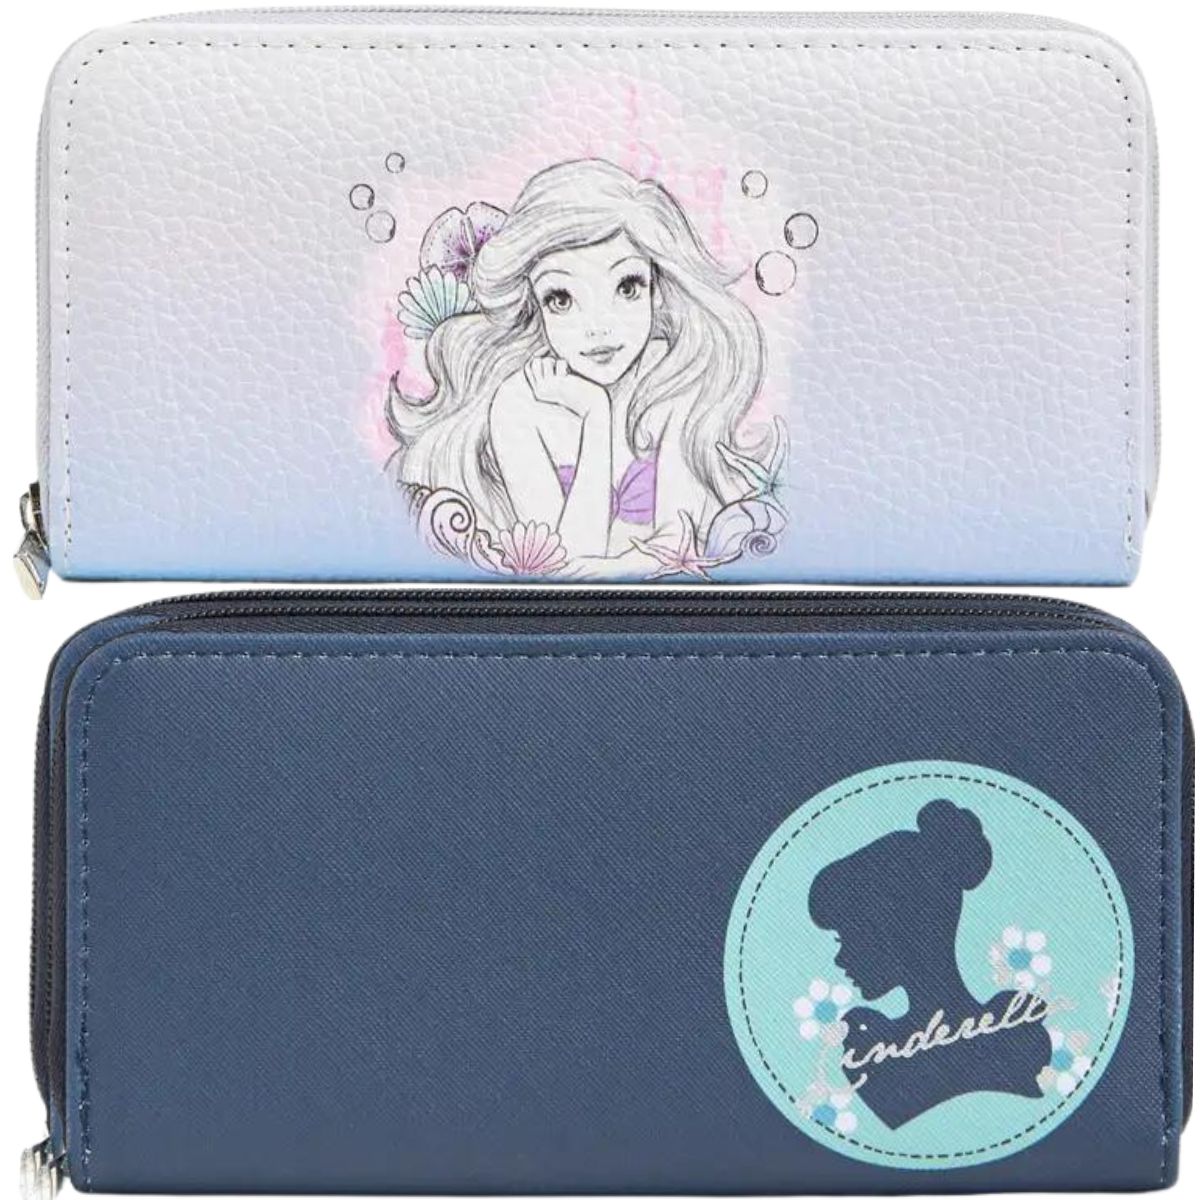 Ariel and Cinderella wallets